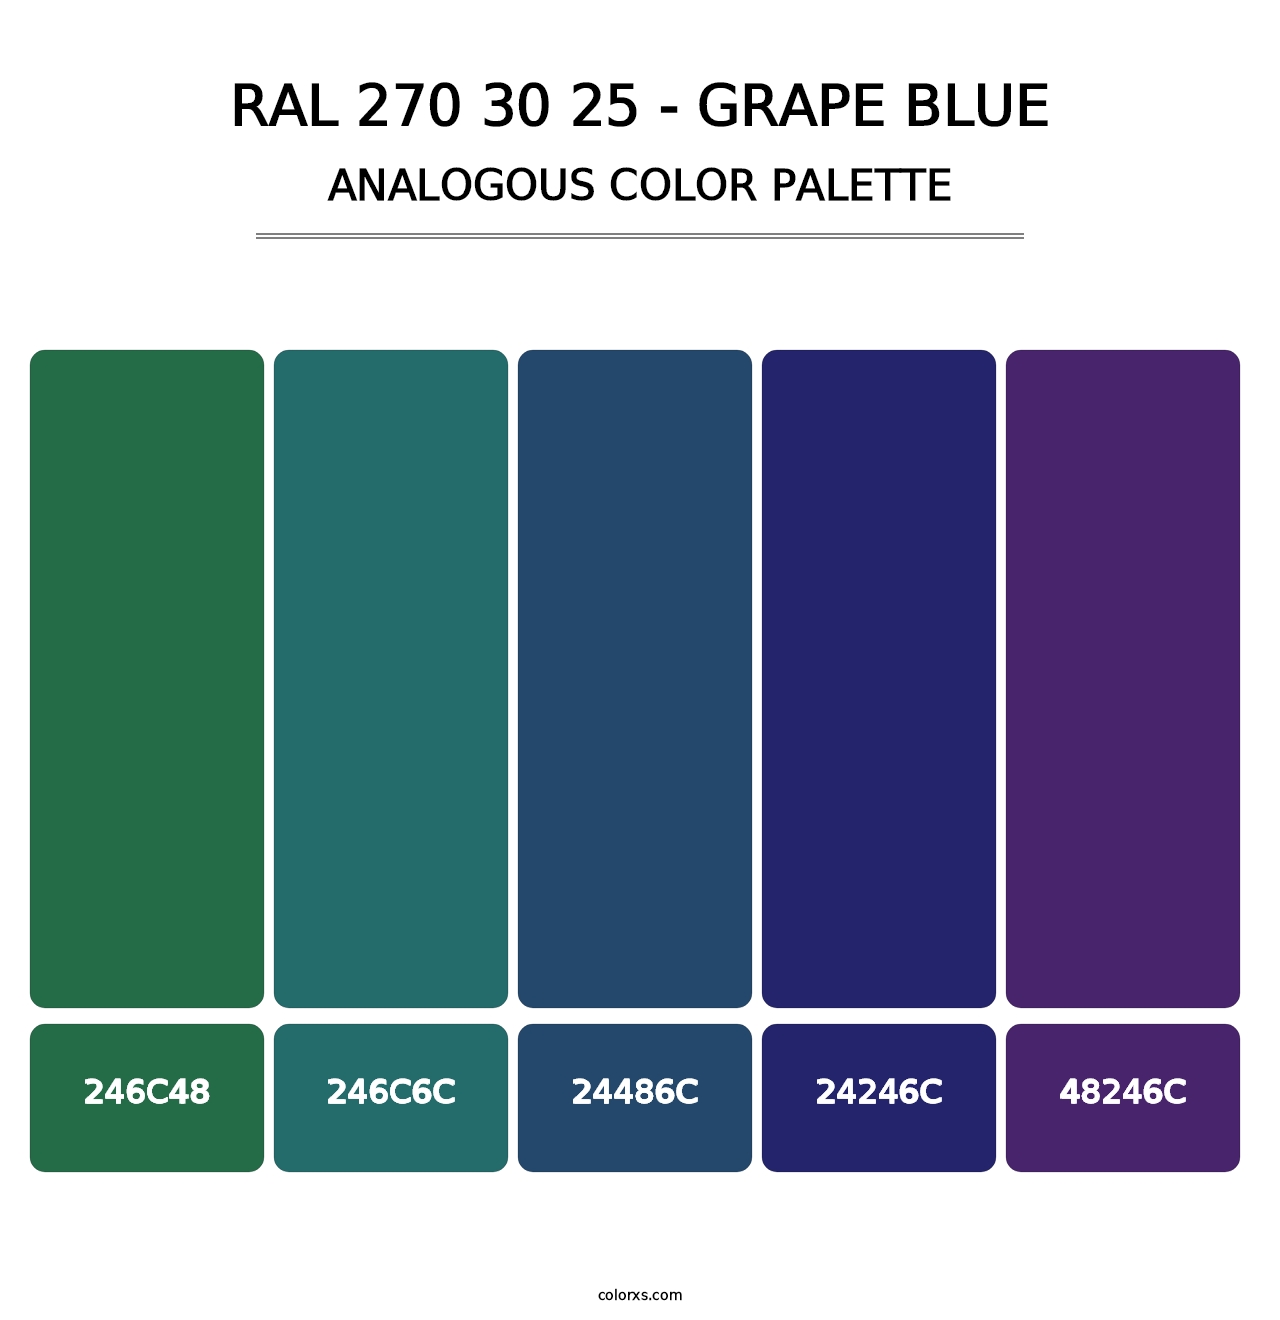 RAL 270 30 25 - Grape Blue - Analogous Color Palette